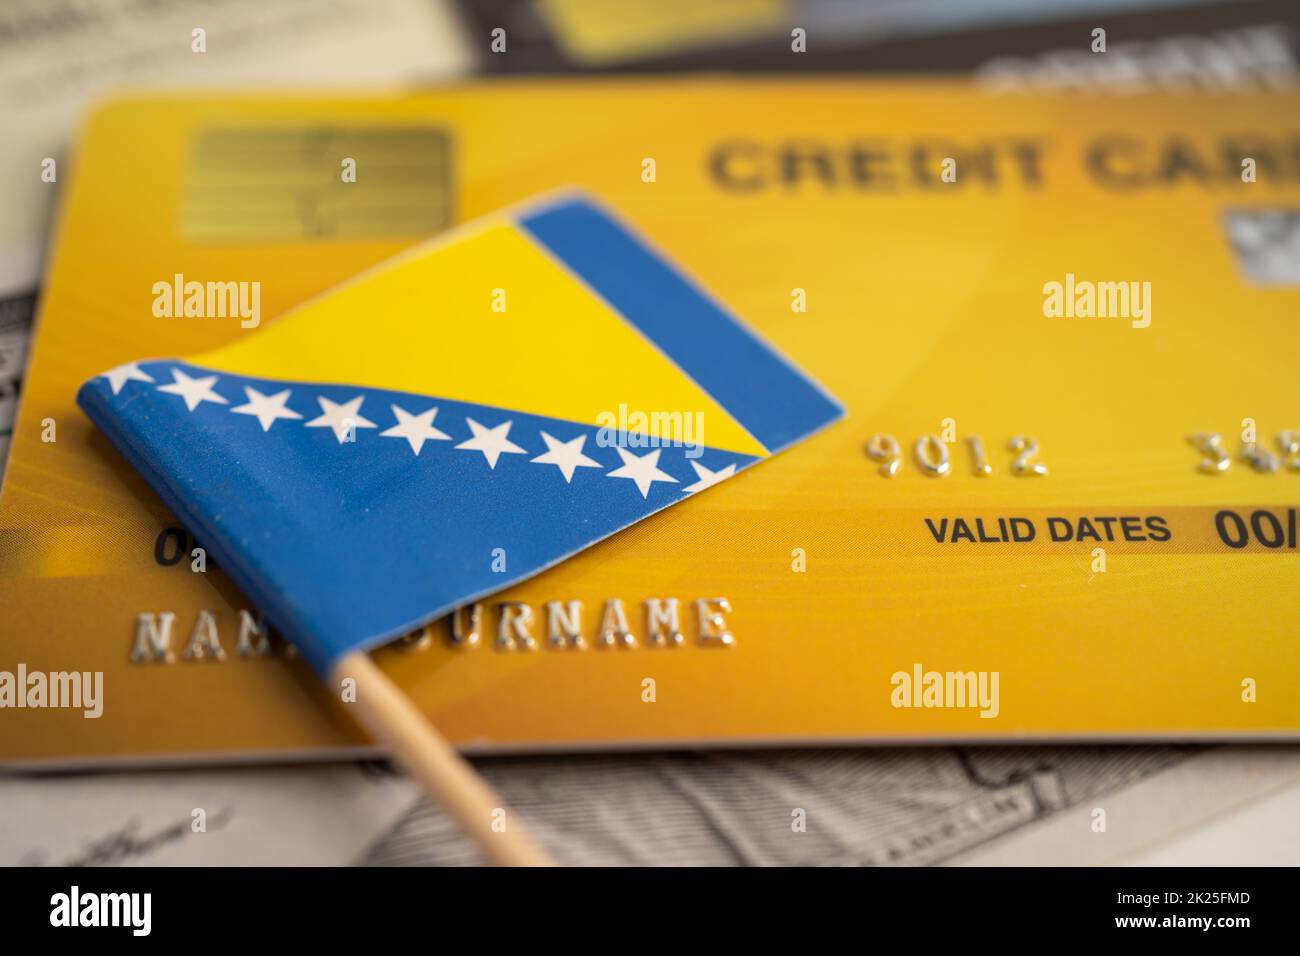 Kennzeichnung von Bosnien und Herzegowina auf der Kreditkarte. Finanzentwicklung, Bankkonto, Statistik, Investment Analytic Research Data Economy, Börsenhandel, Unternehmenskonzept. Stockfoto